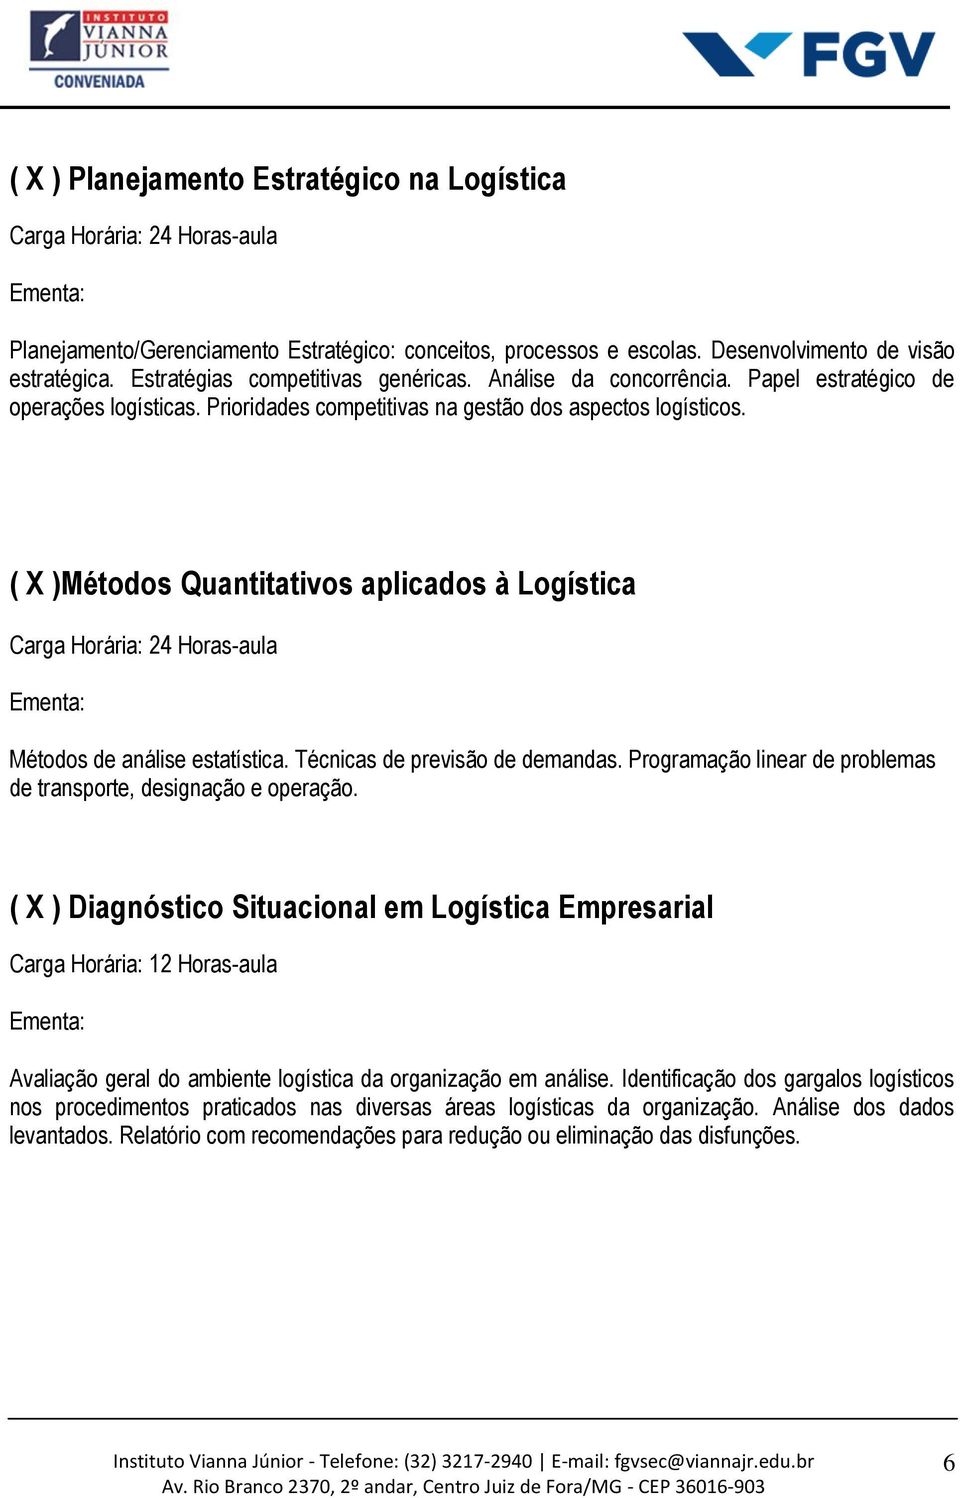 ( X )Métodos Quantitativos aplicados à Logística Métodos de análise estatística. Técnicas de previsão de demandas. Programação linear de problemas de transporte, designação e operação.